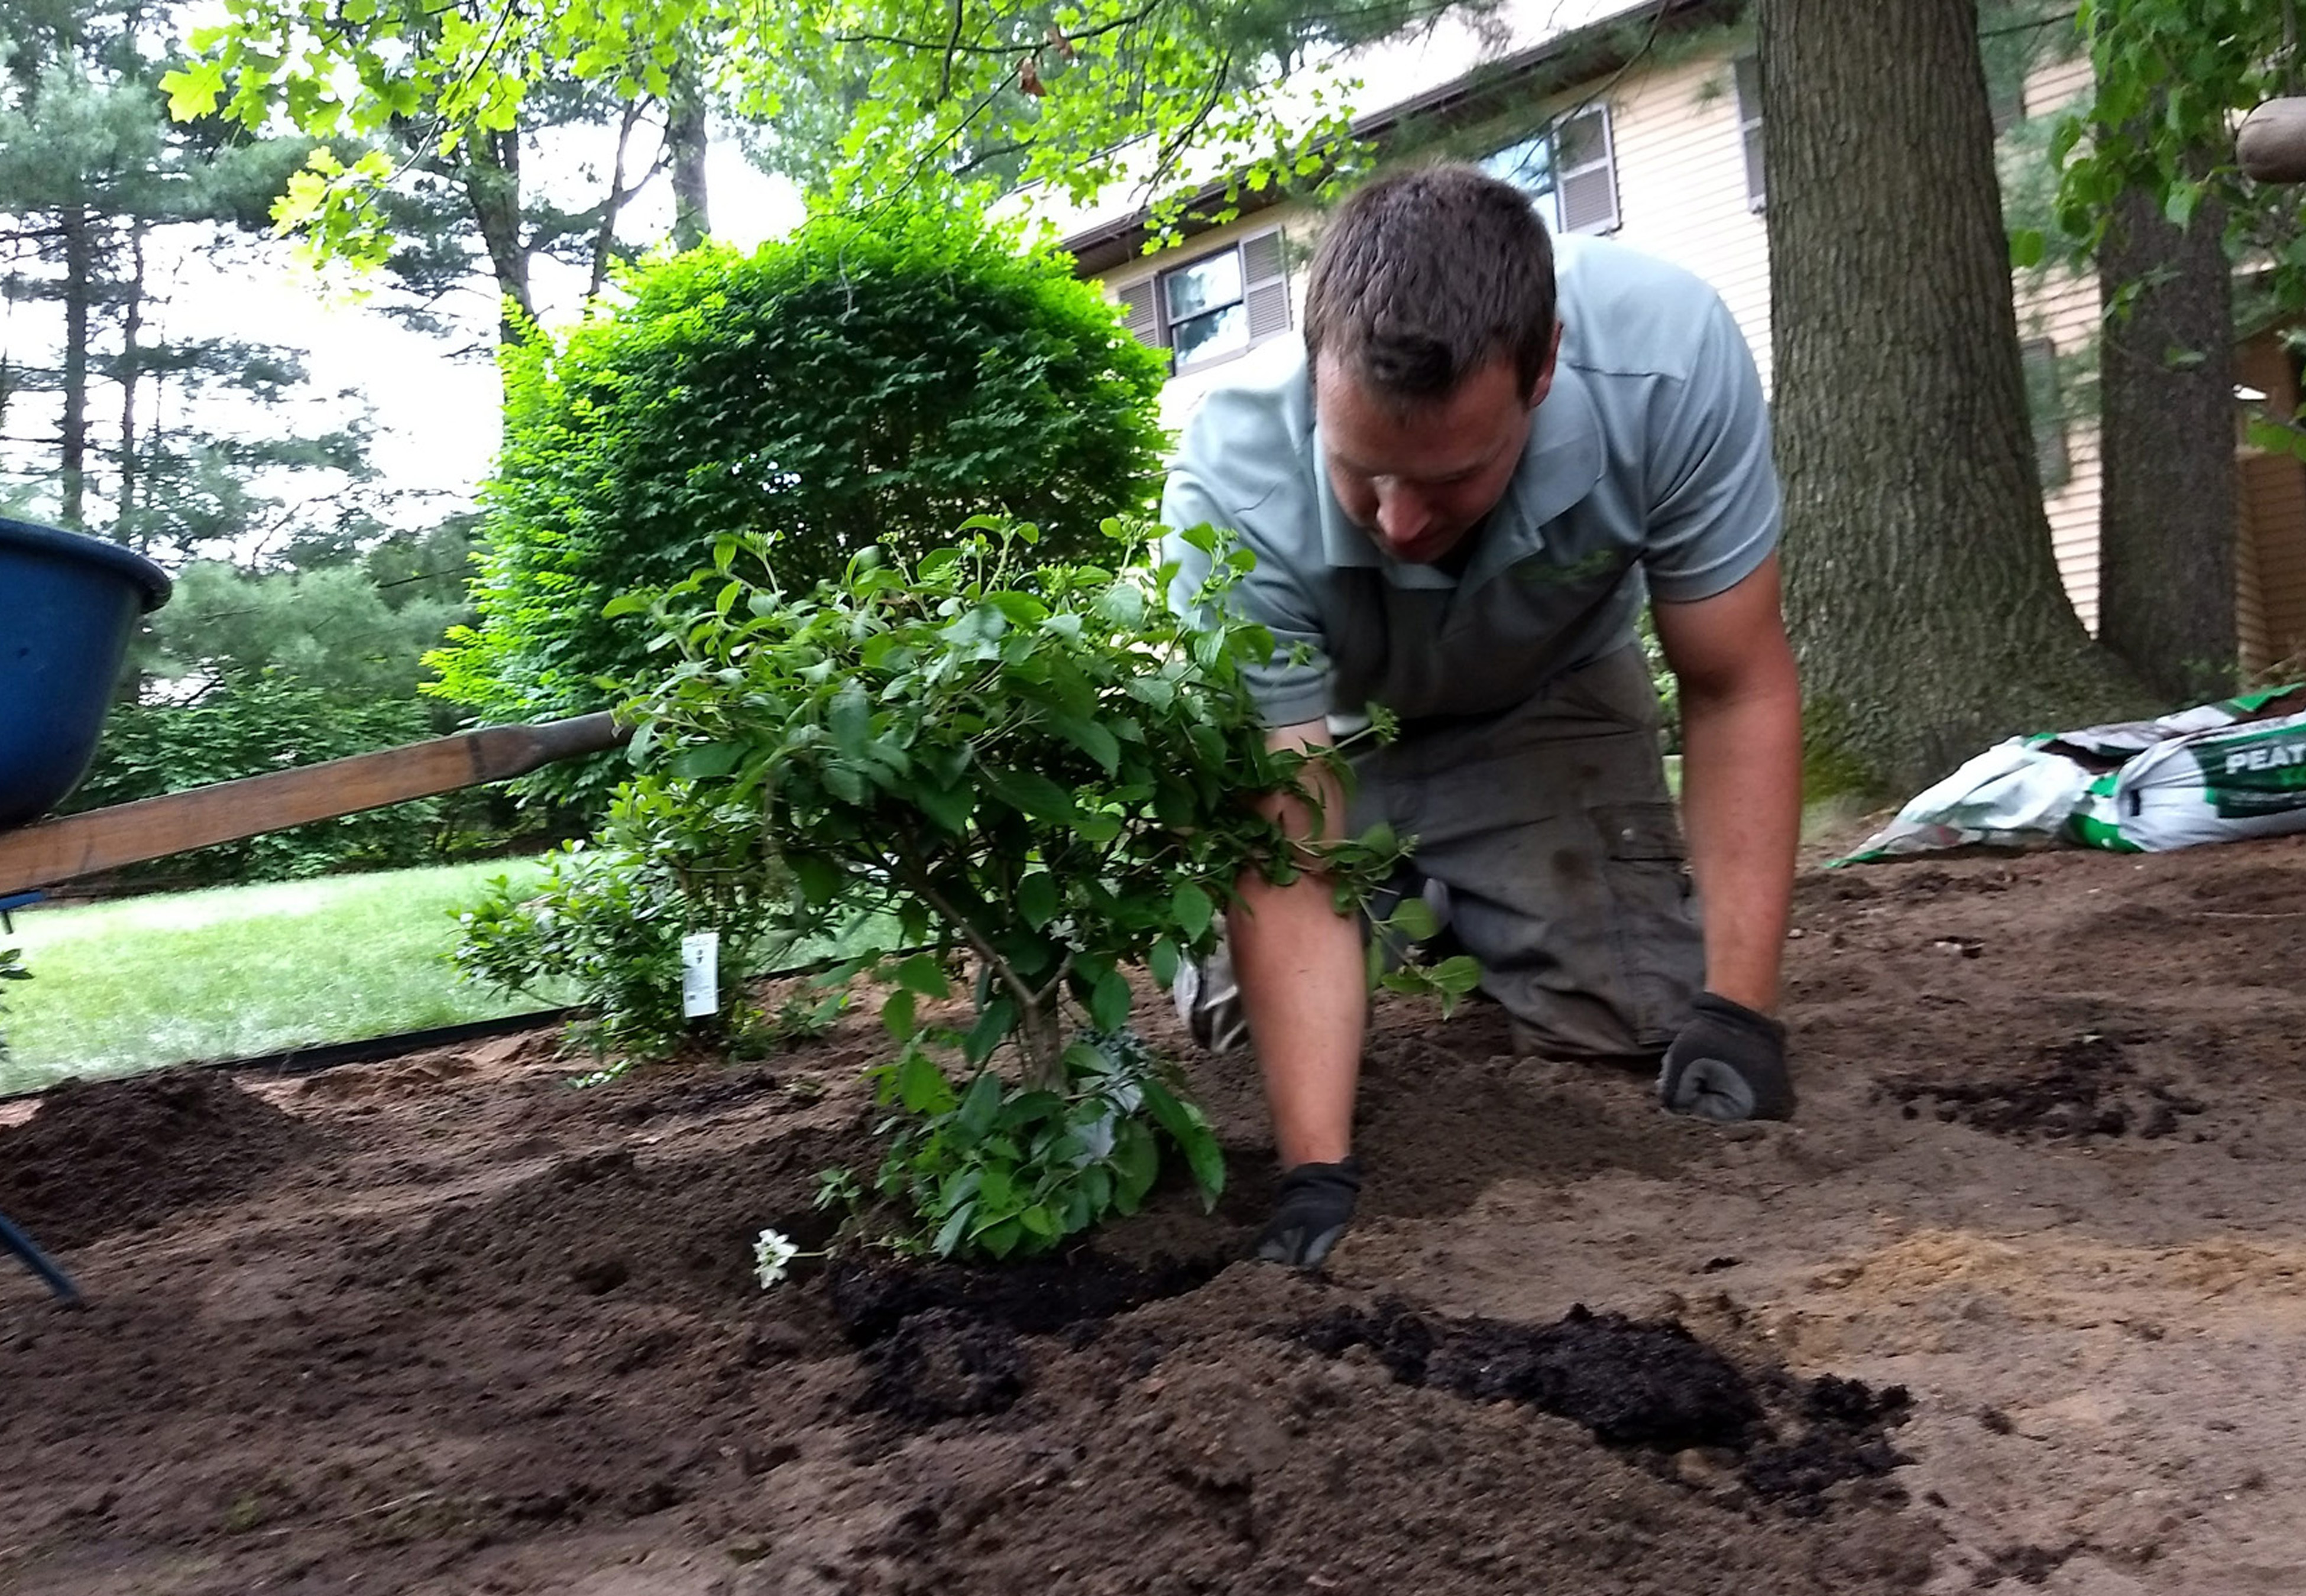 Joe planting a shrub